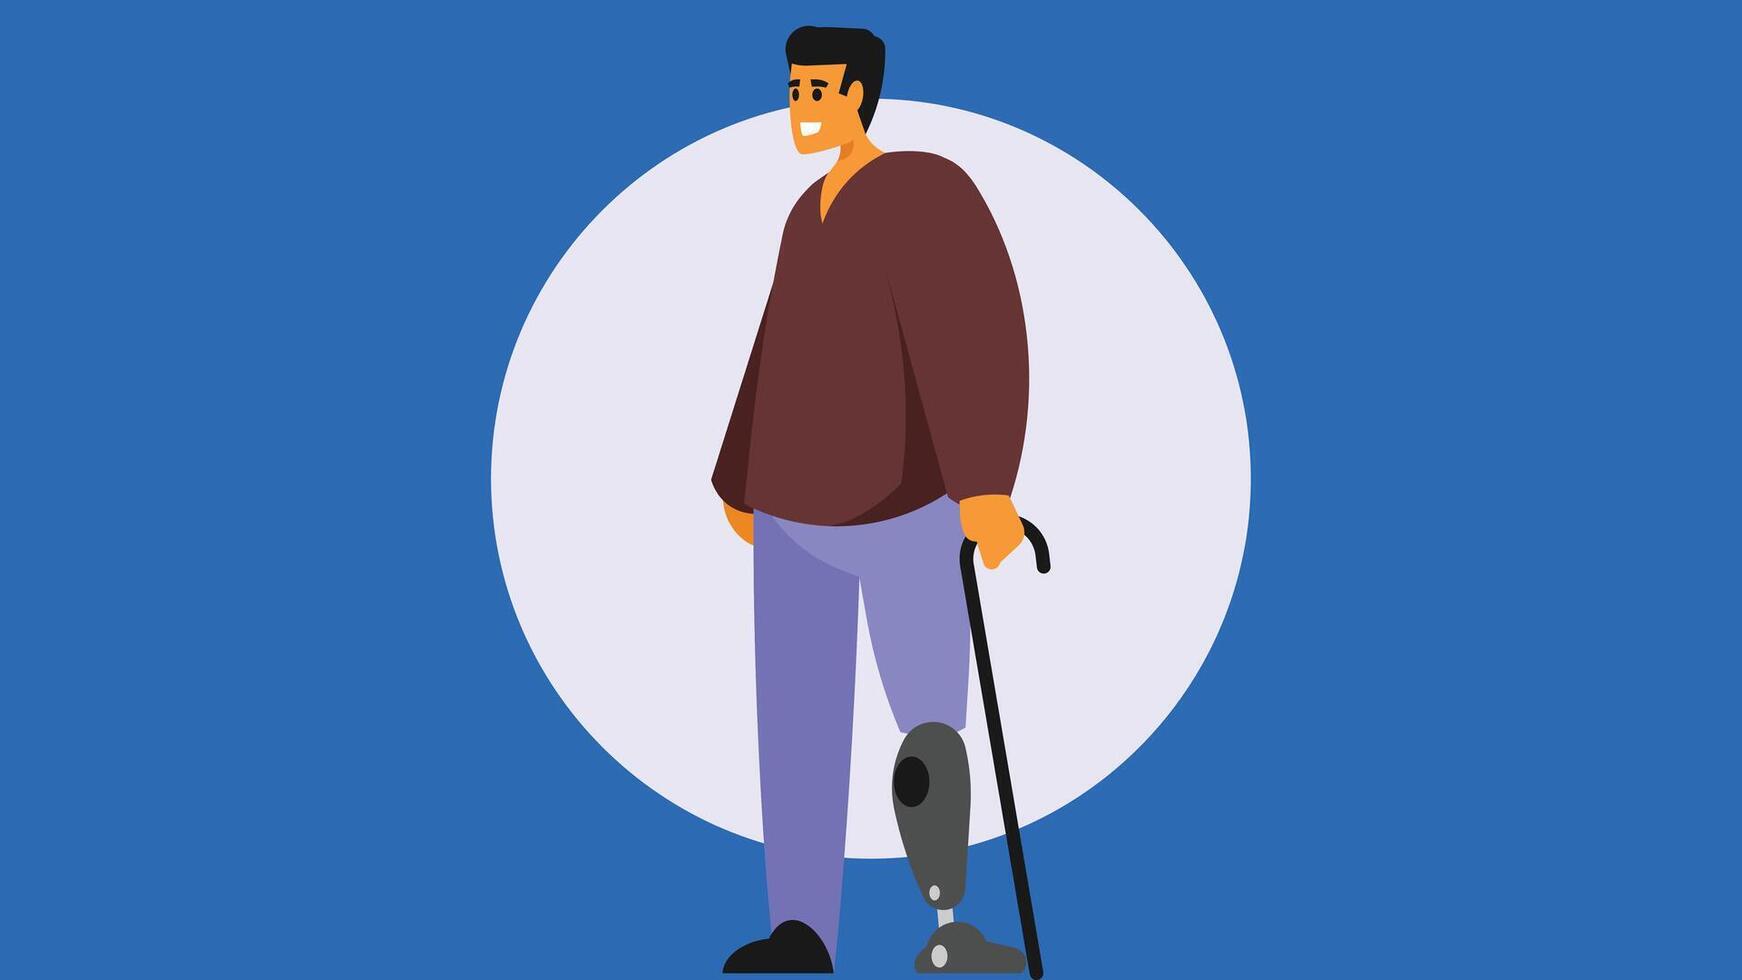 persoon met kunstmatig been en een wandelen stok illustratie vector